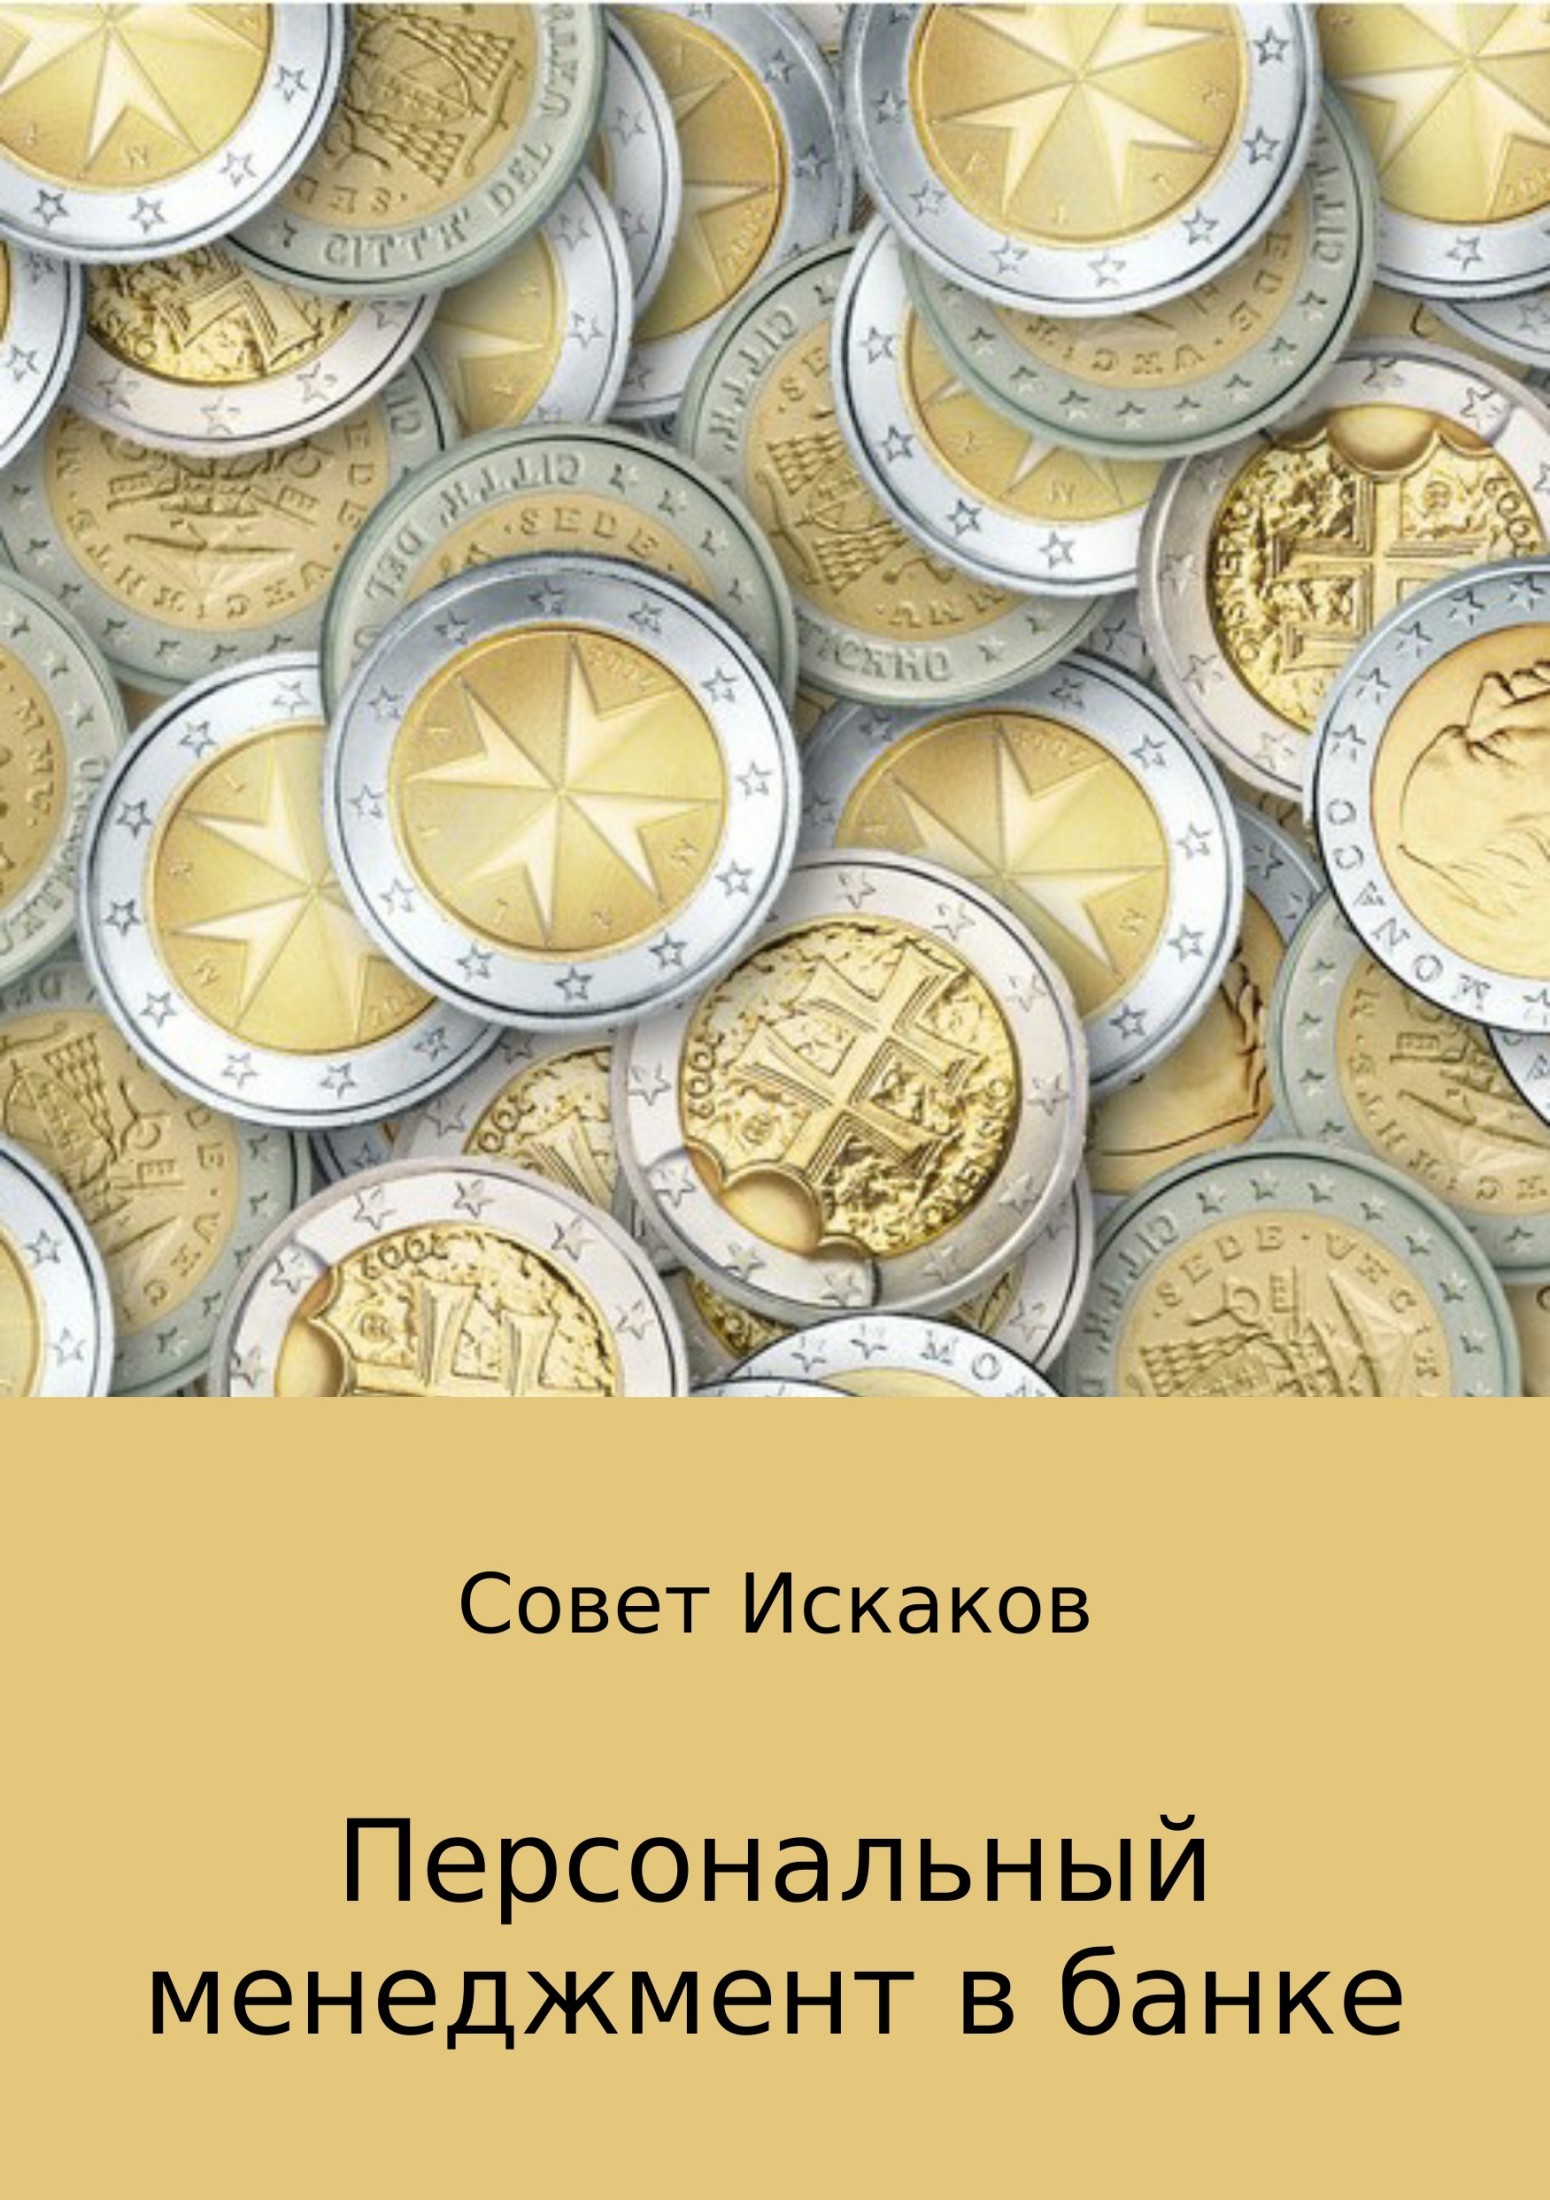 Совет Николаевич Искаков бесплатно